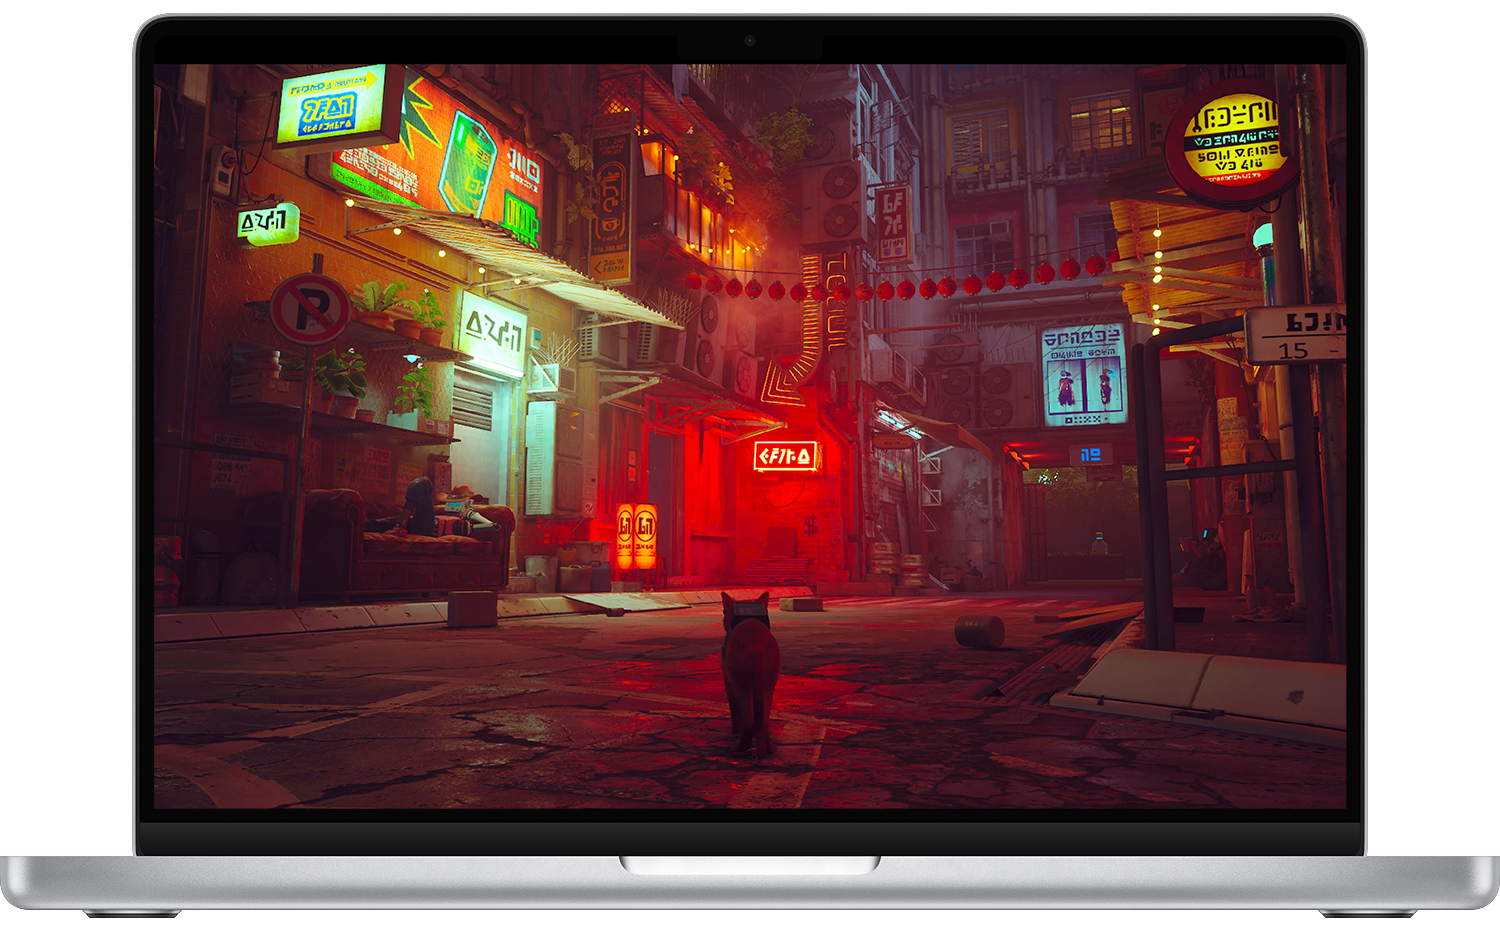 ビデオゲーム「Stray」が表示されているMacBook Proのスクリーンショット。